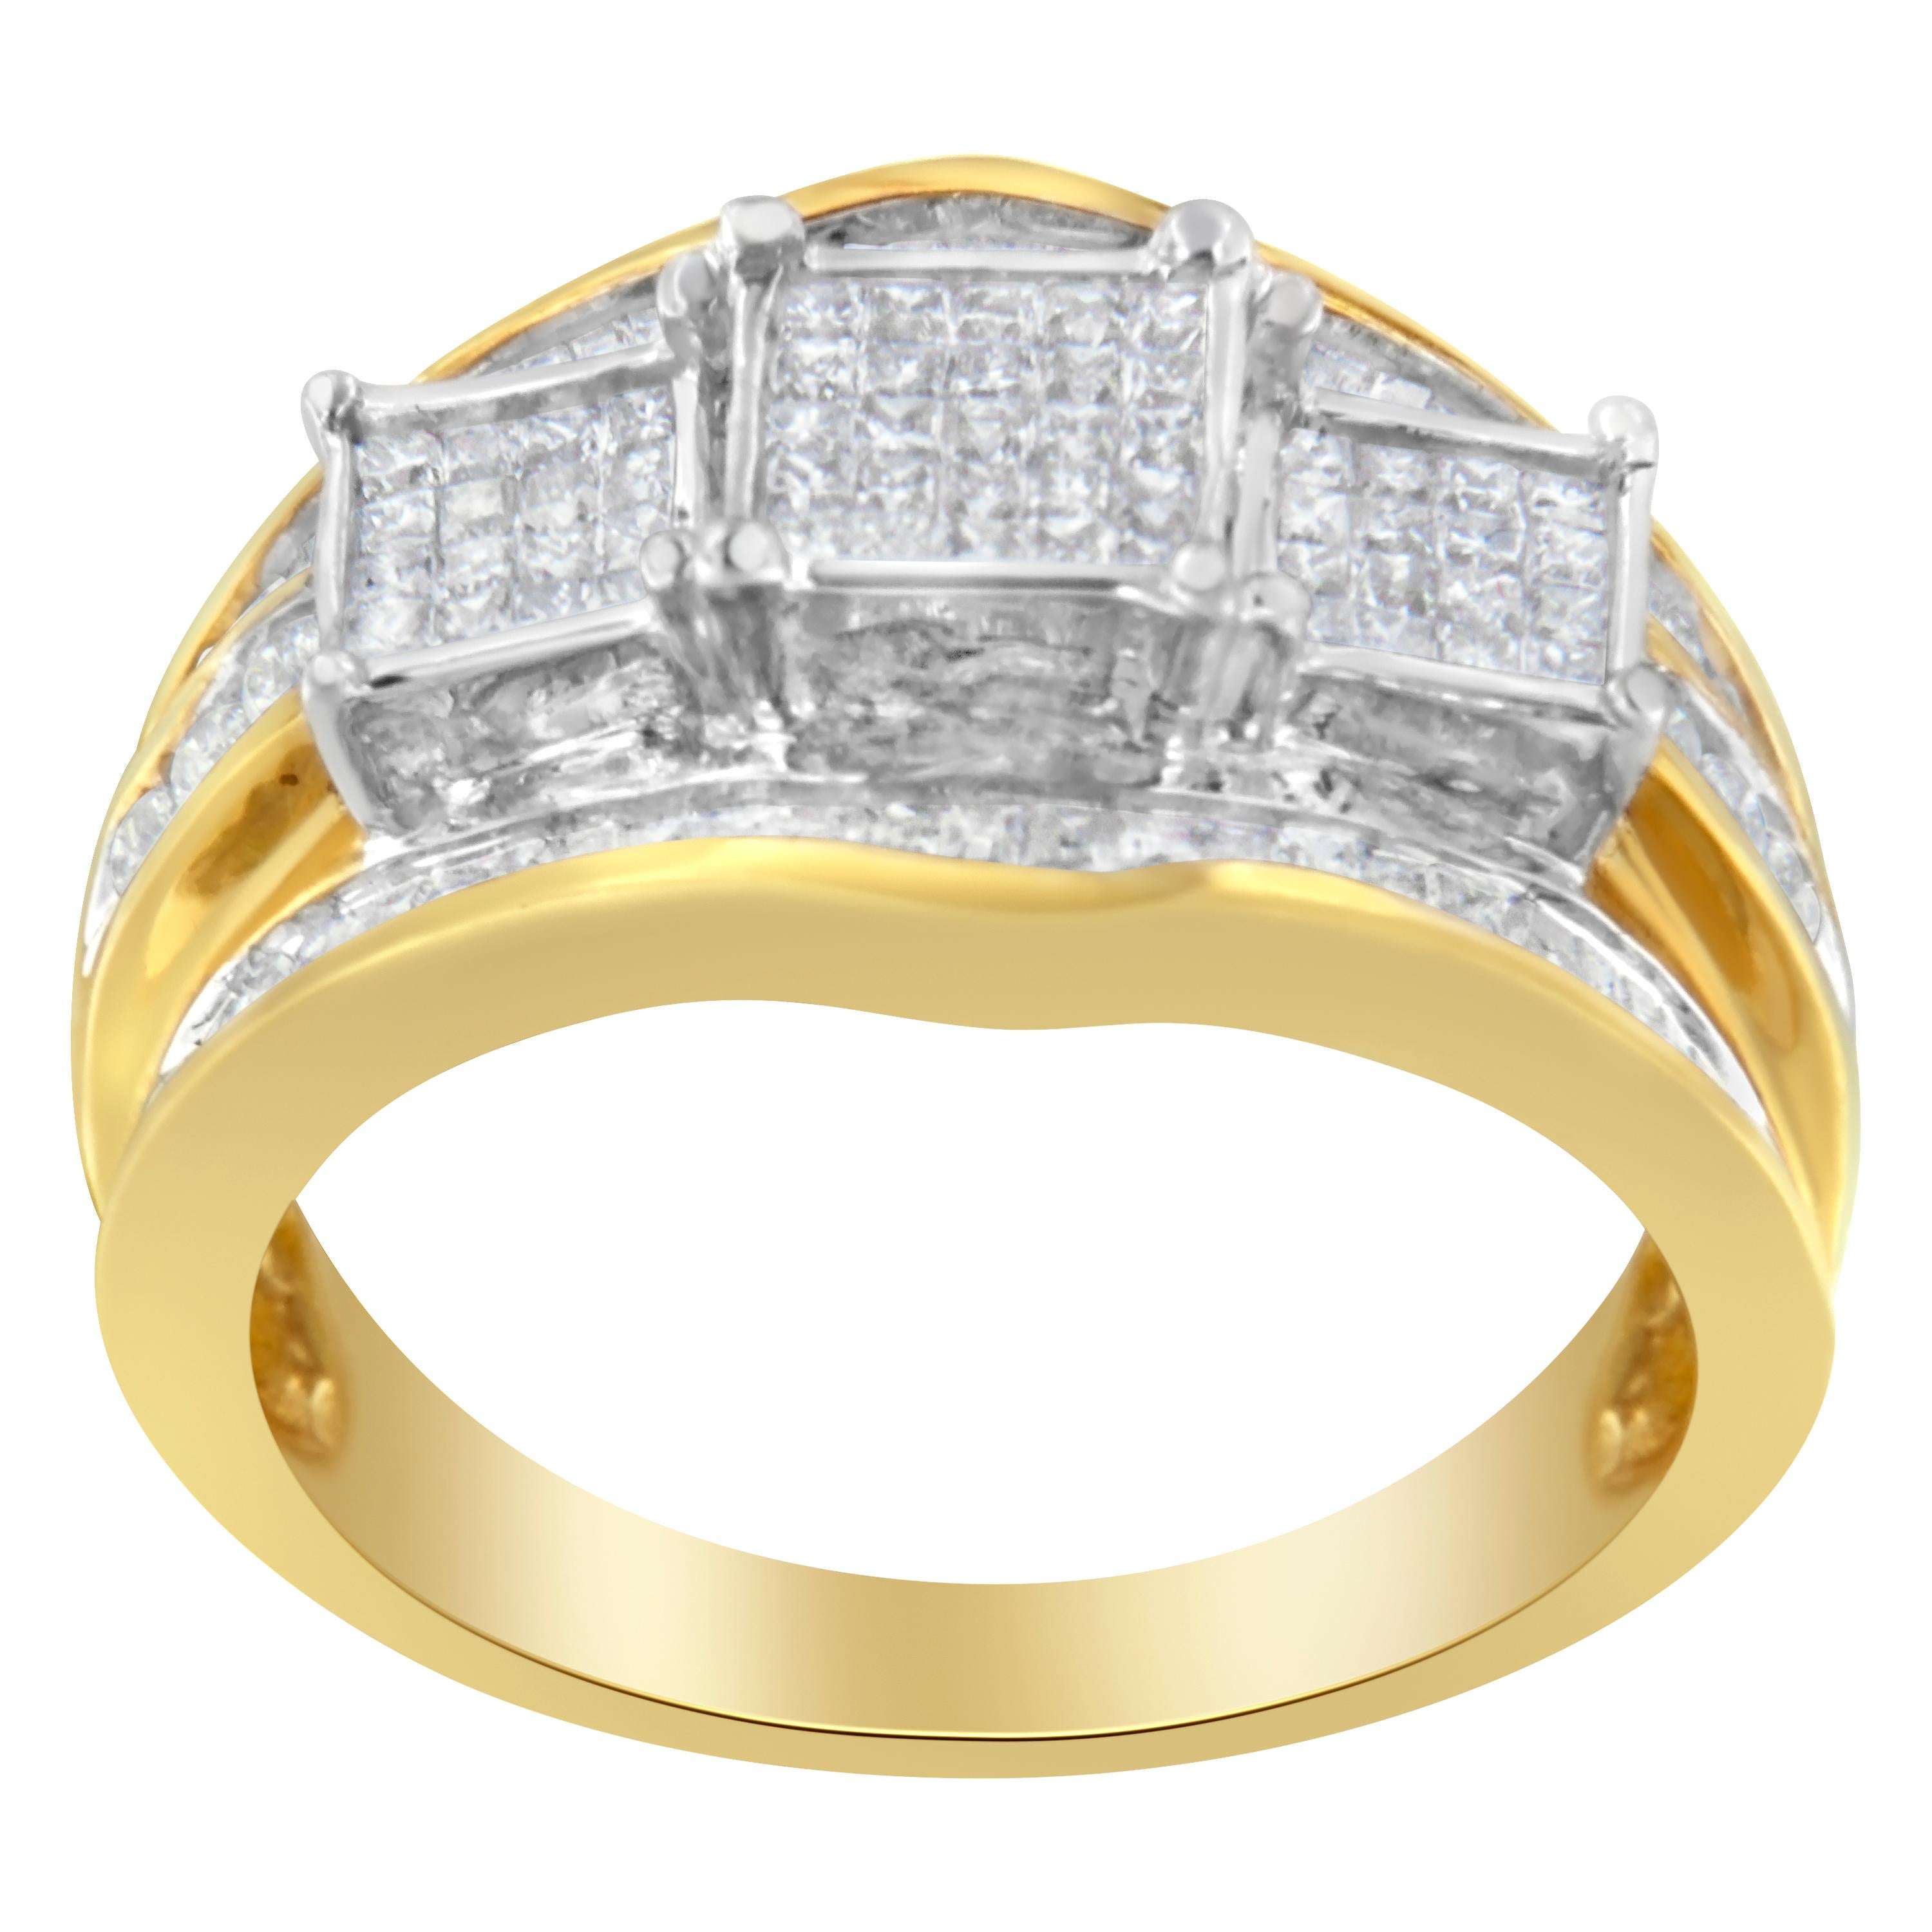 Ein einzigartiger Gold- und Diamant-Cluster-Ring. Dieser Ring besteht aus 6 runden, 53 Baguette- und 57 Prinzess-Diamanten mit einem Gesamtgewicht von 1 ct. Die Diamanten sind in glänzendes, zweifarbiges 14-karätiges Gold gefasst. 

video auf